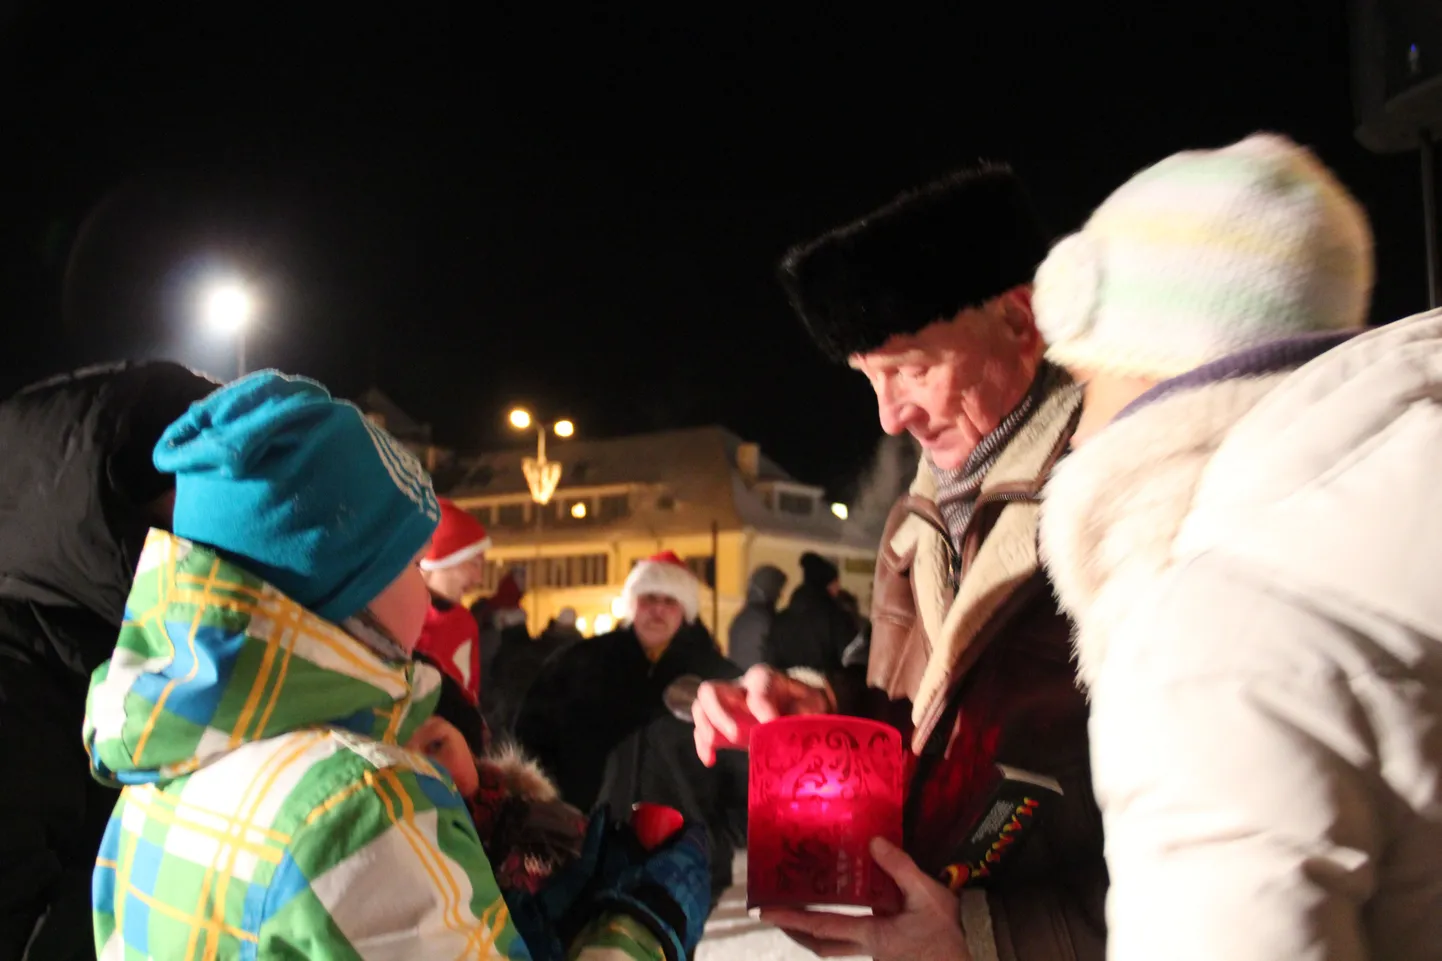 Esimene advent Rakvere linna jõulupuu juures.Rakvere linnapea Toomas Varek jagab soovijatele jõulutuld.